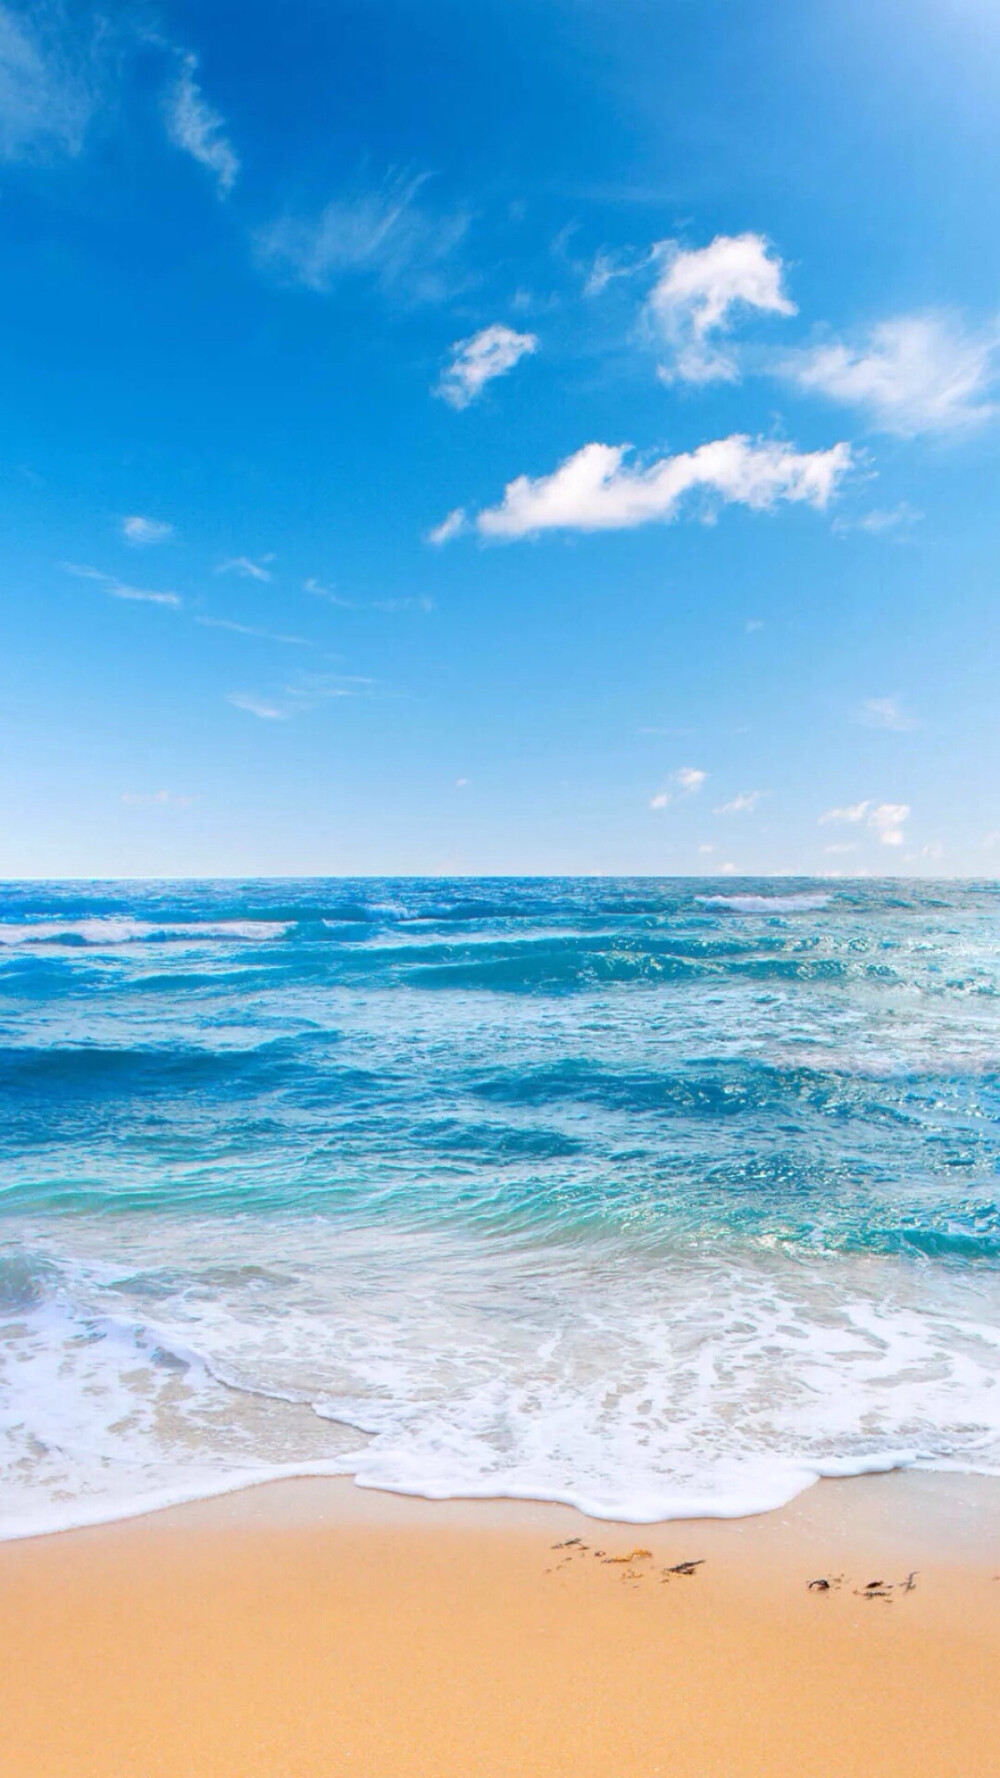 唯美自然风景 蓝天碧海 沙滩 海洋 唯美风景 iphone手机壁纸 唯美壁纸